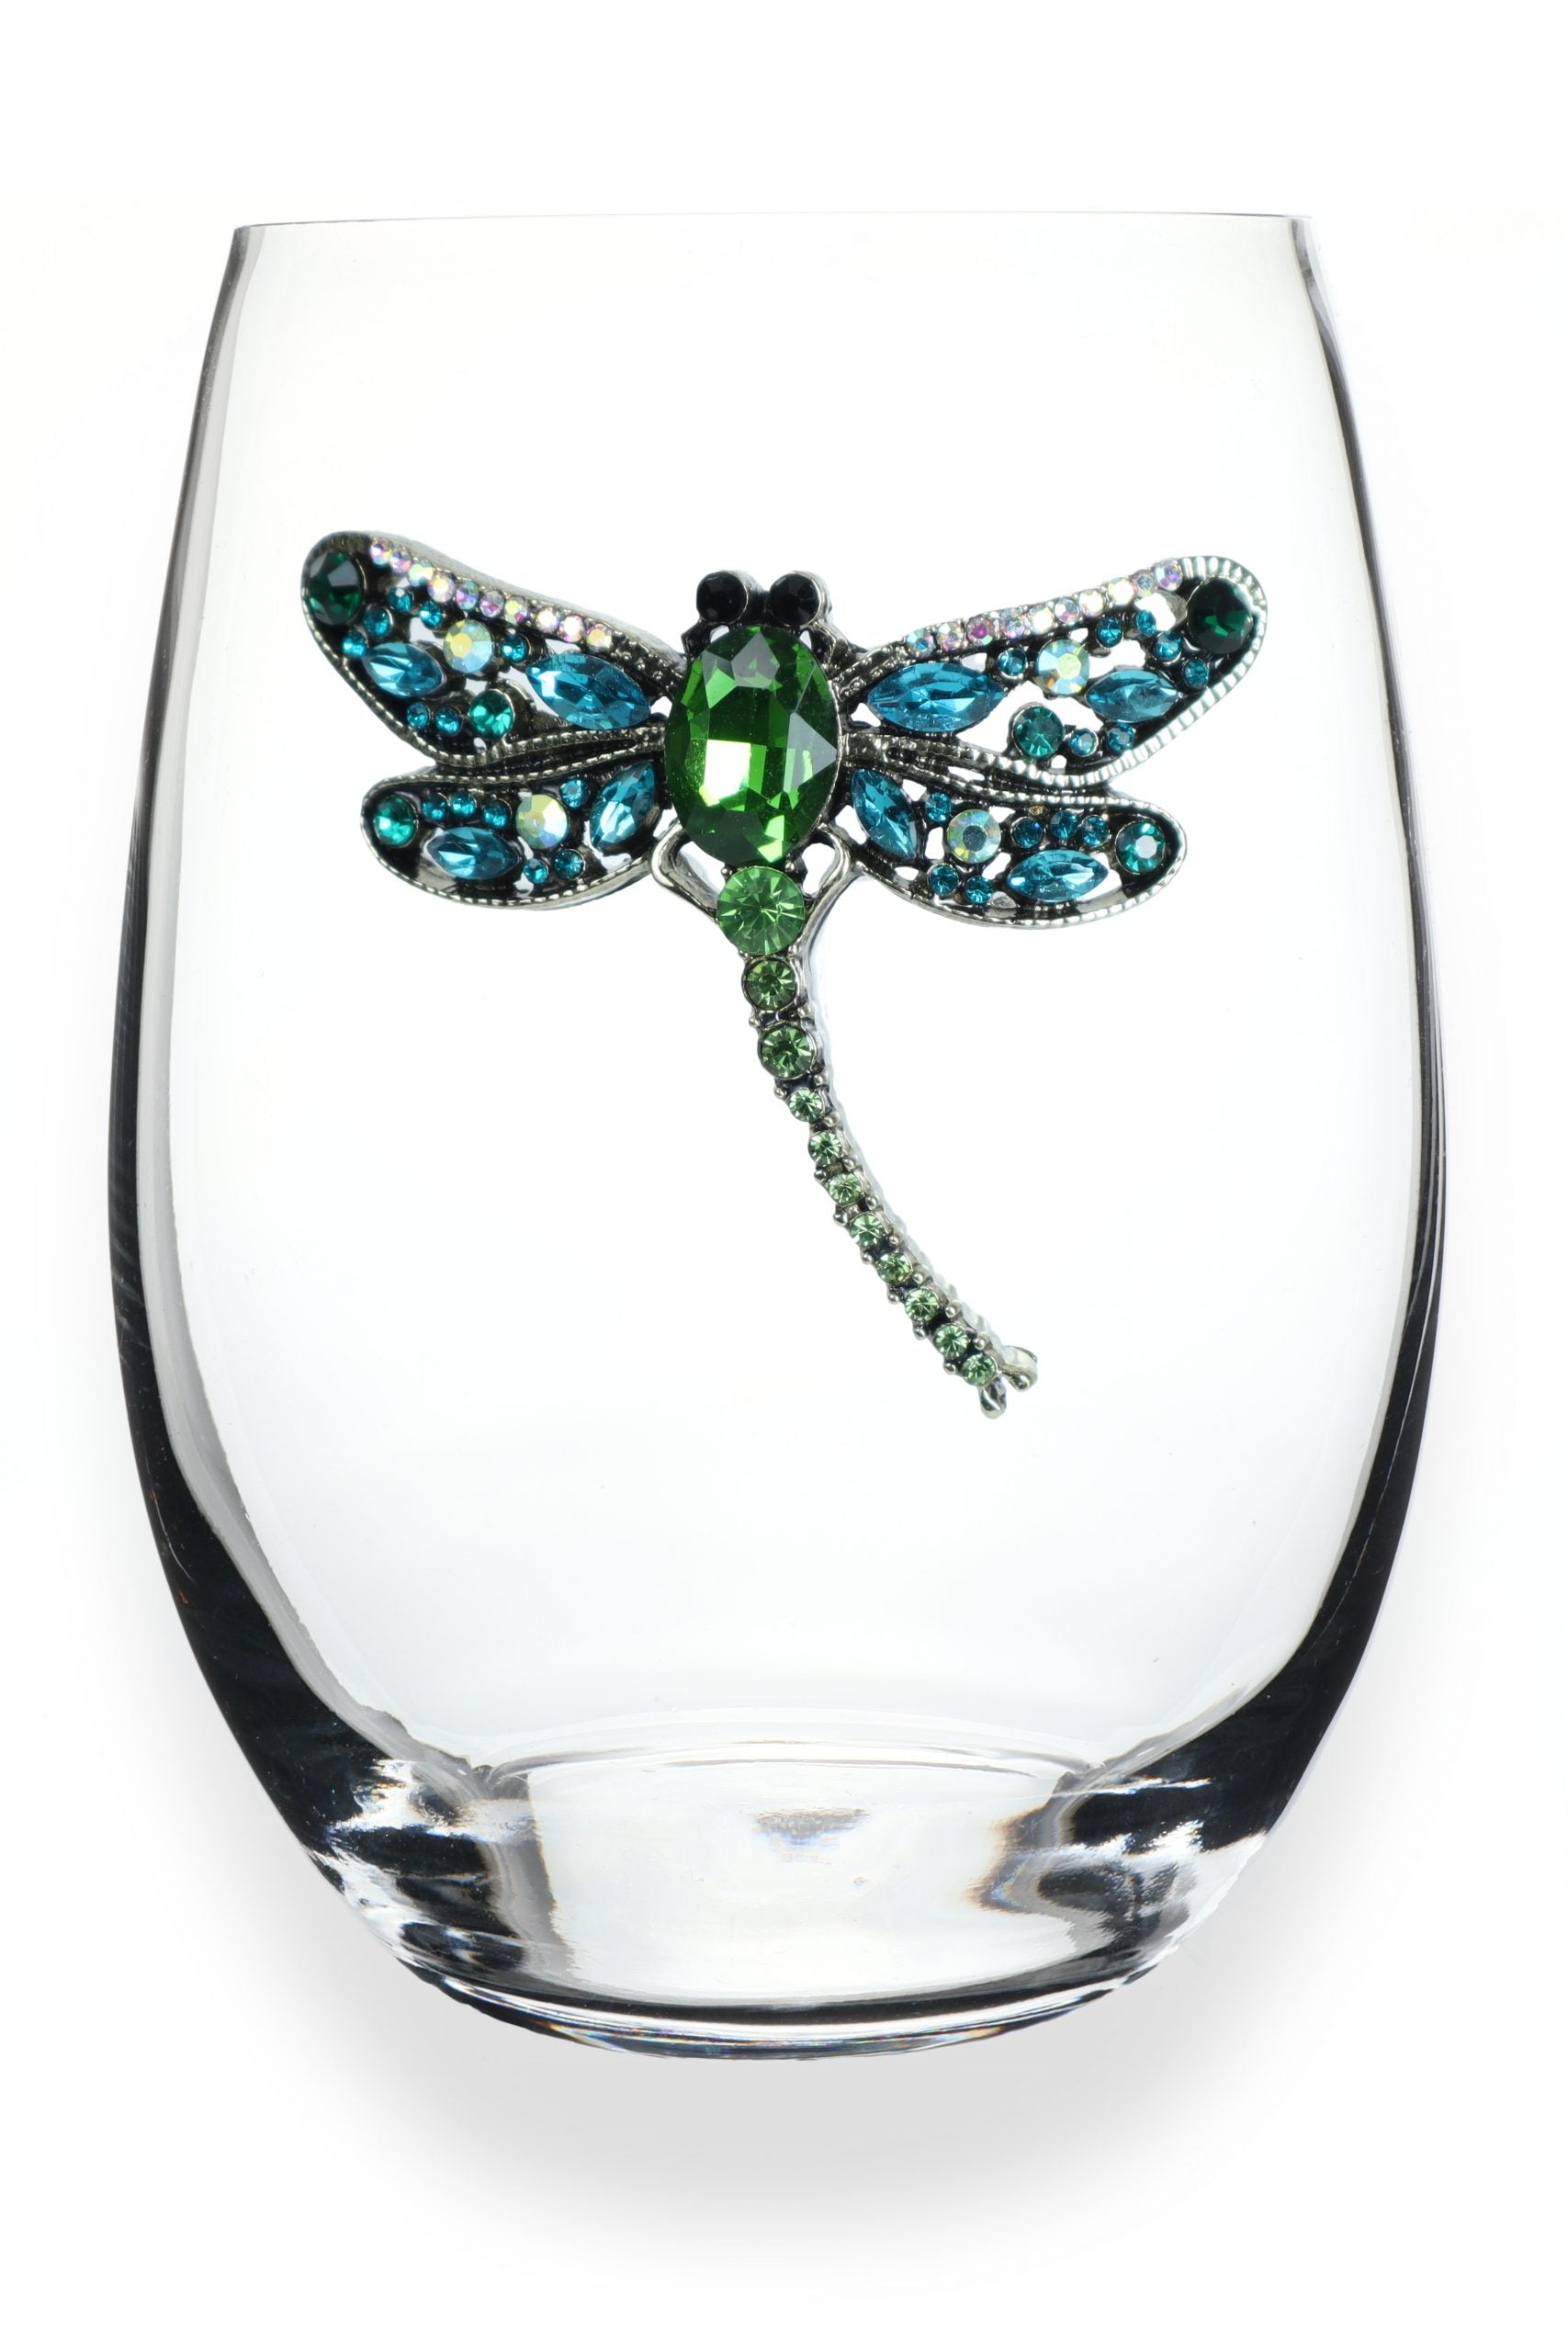 Dragonfly Jeweled Wine Glass